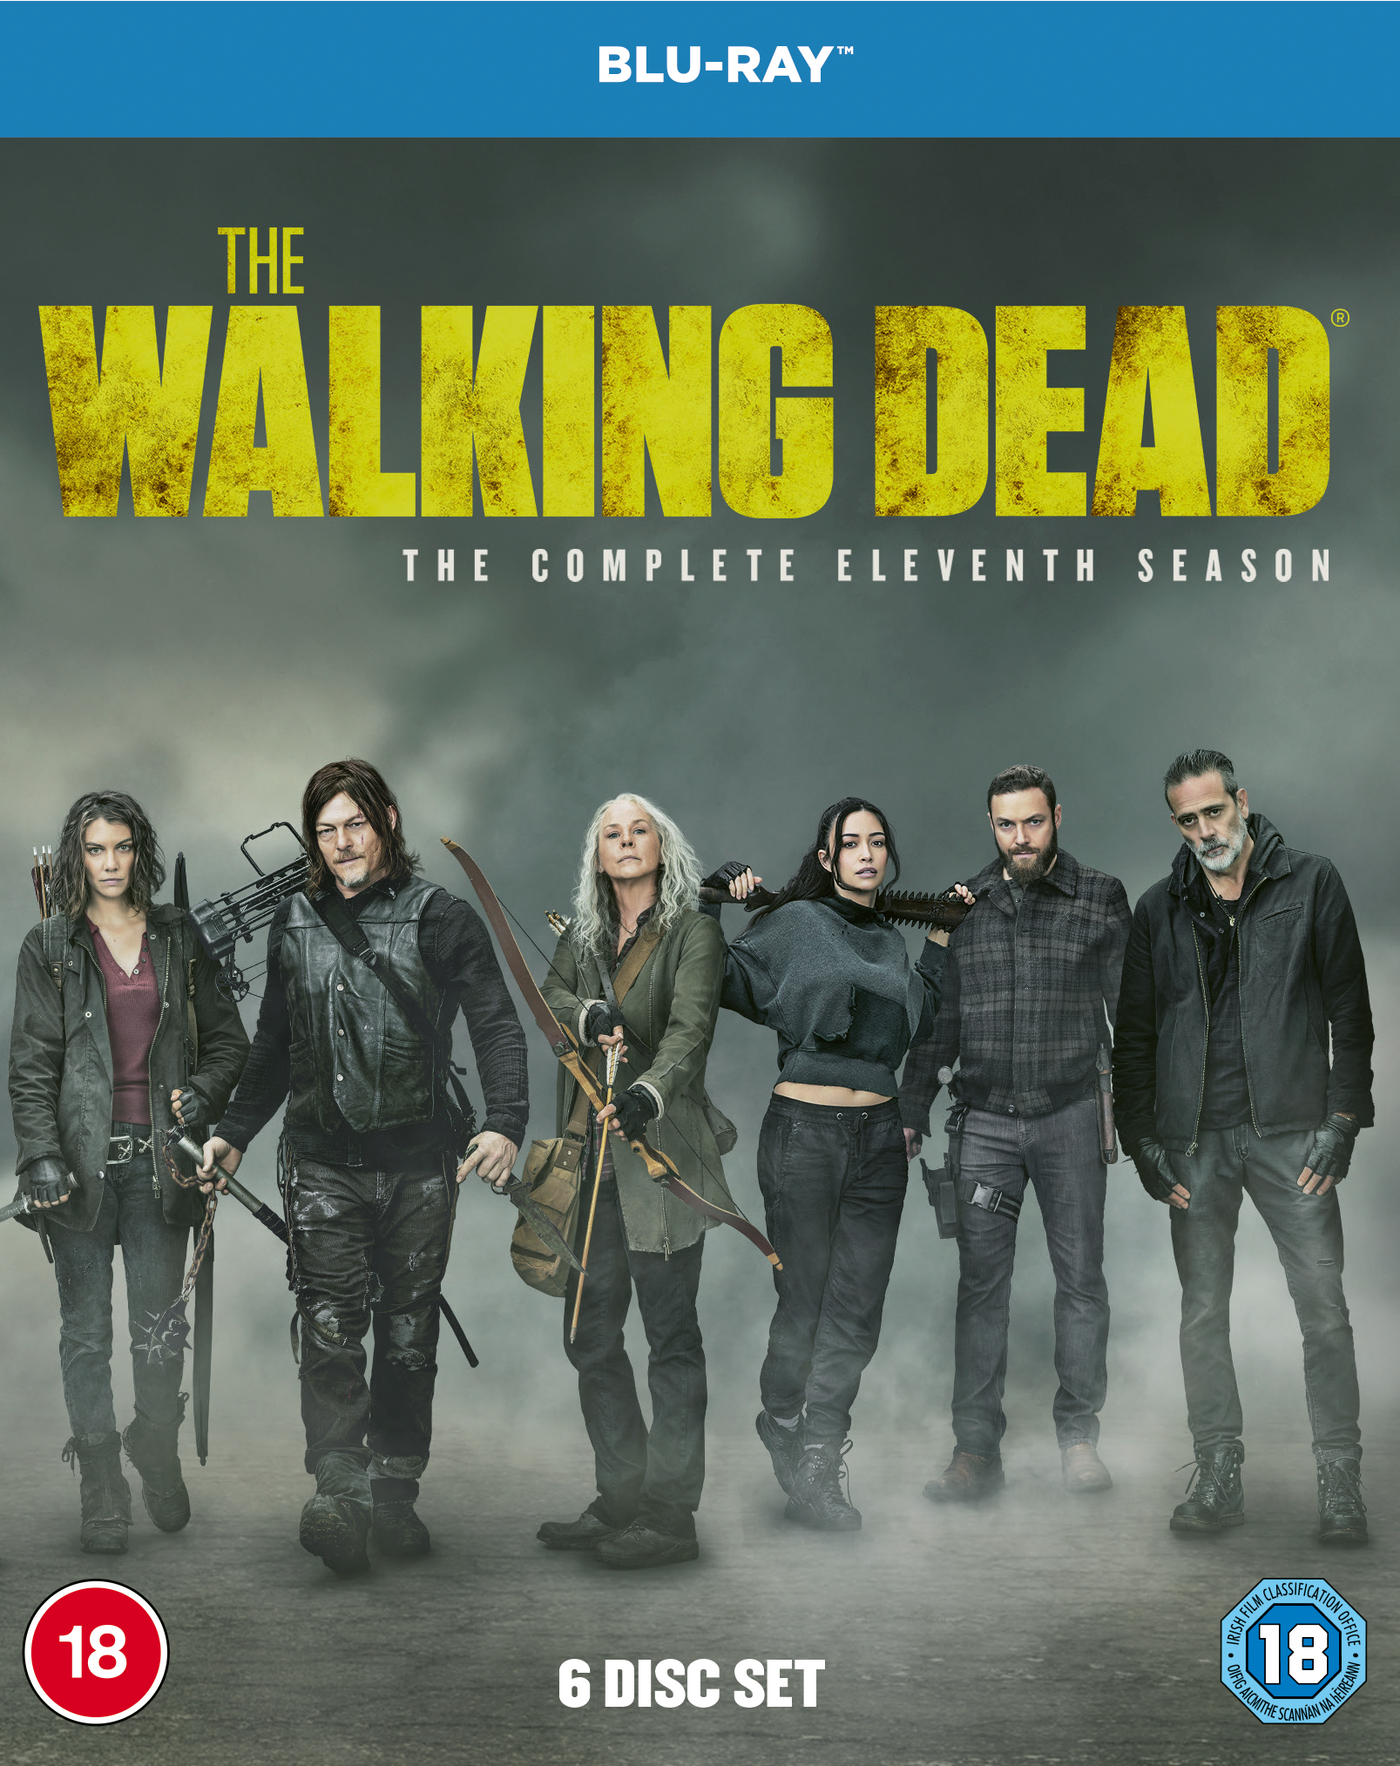 The Walking Dead Season 11 [Blu-ray] [2022]